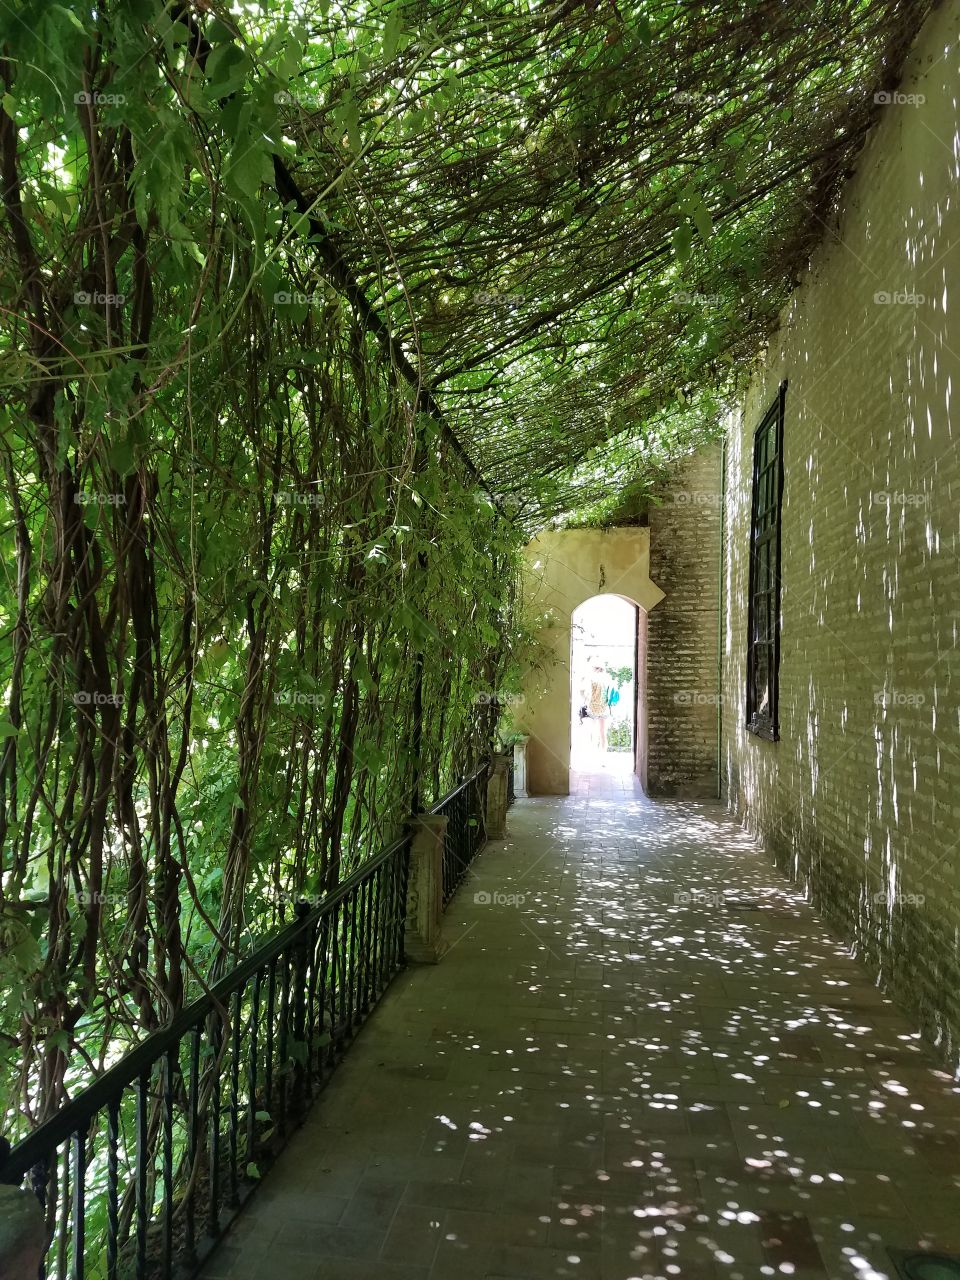 Hidden Passageways in the Real Alcazar gardens